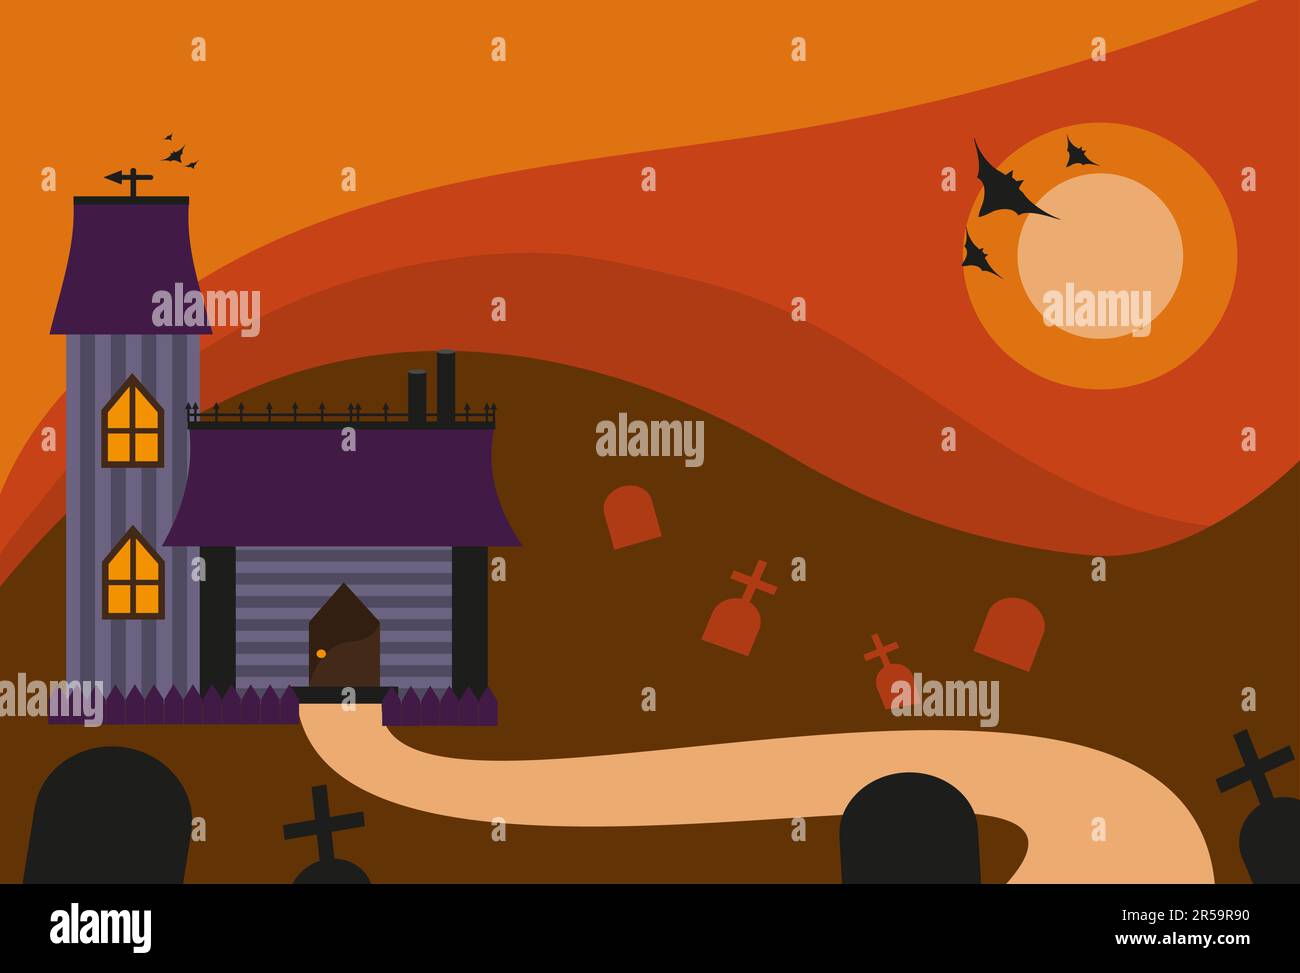 Halloween-Landschaft. Ein Haus mit einer Straße, Gräber auf dem Friedhof, Fledermäuse am Himmel mit Mond. Orangefarbener und roter Himmel. Stock Vektor